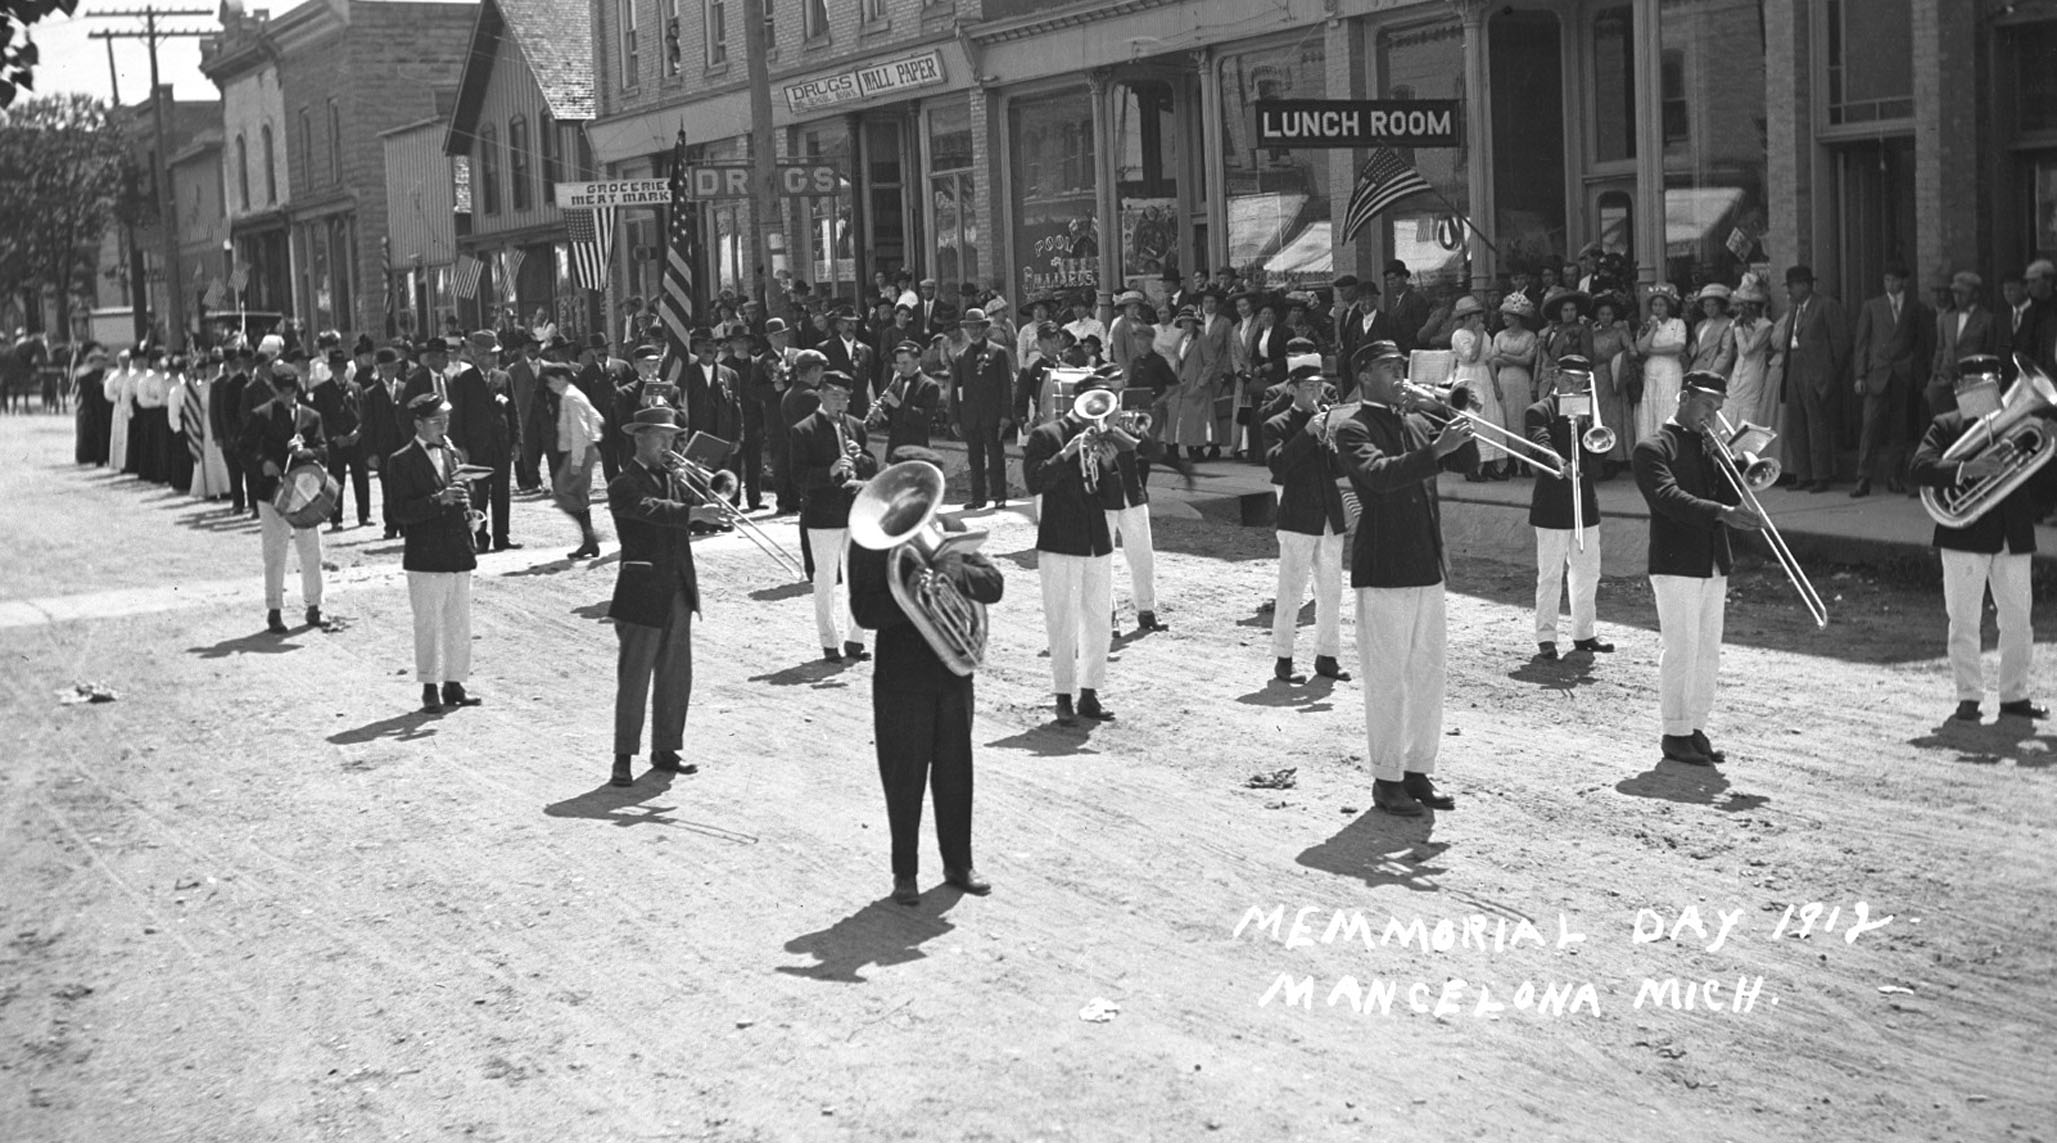 Mancelona Memorial Day Parade 1912